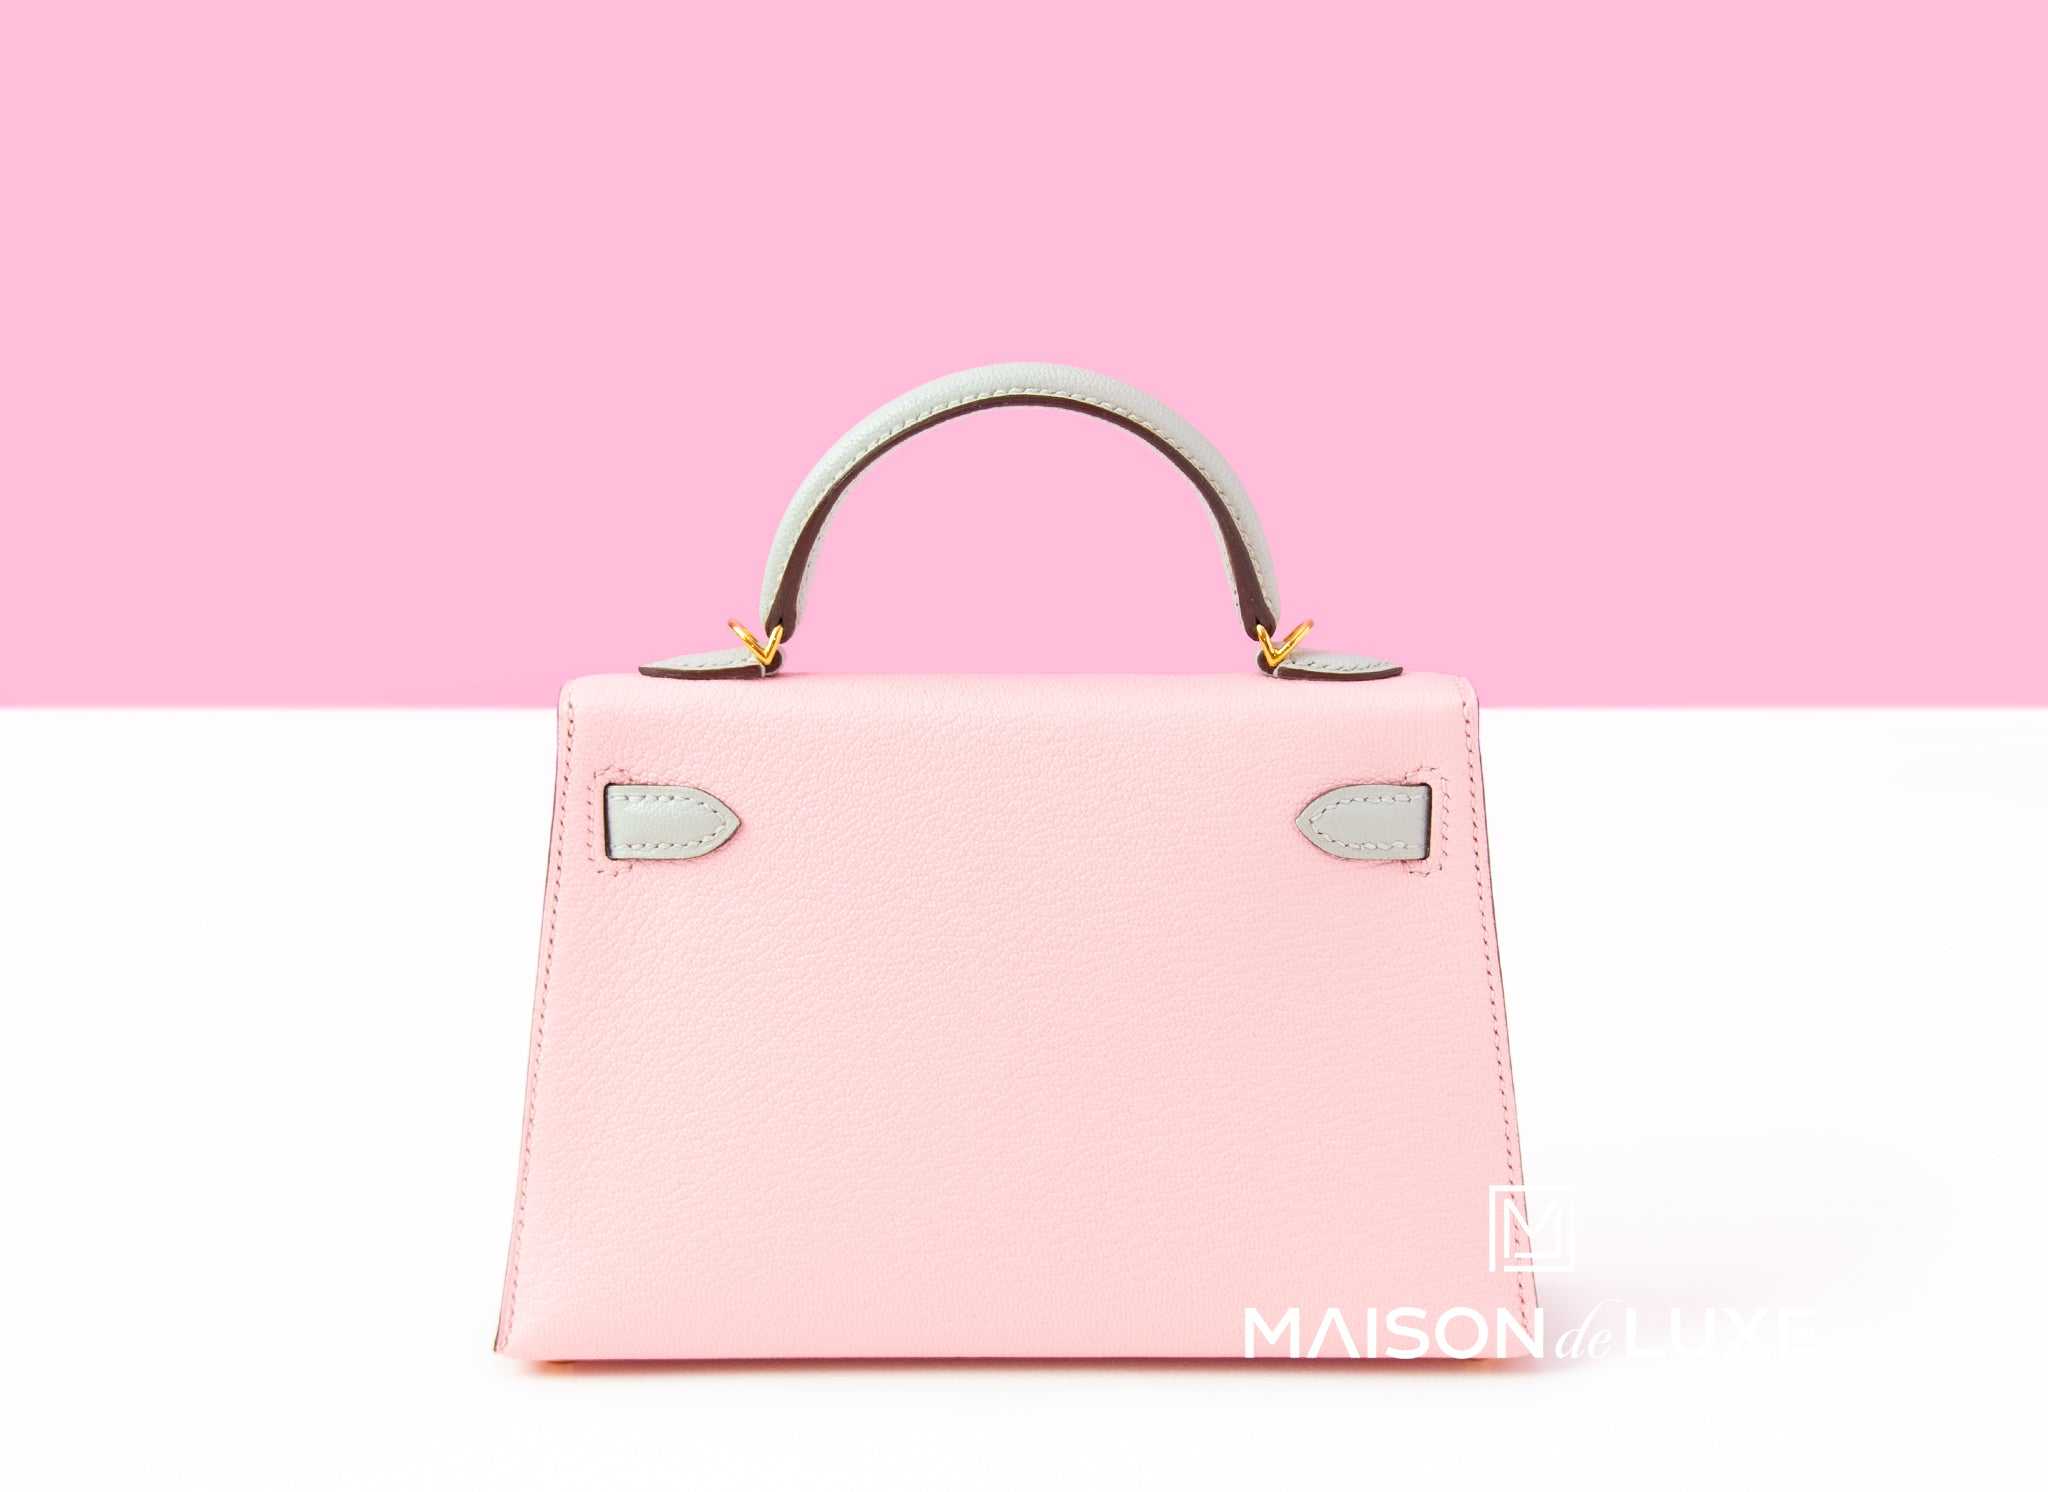 Hermès Mini Kelly II Sellier 20 - Pink Handle Bags, Handbags - HER513563